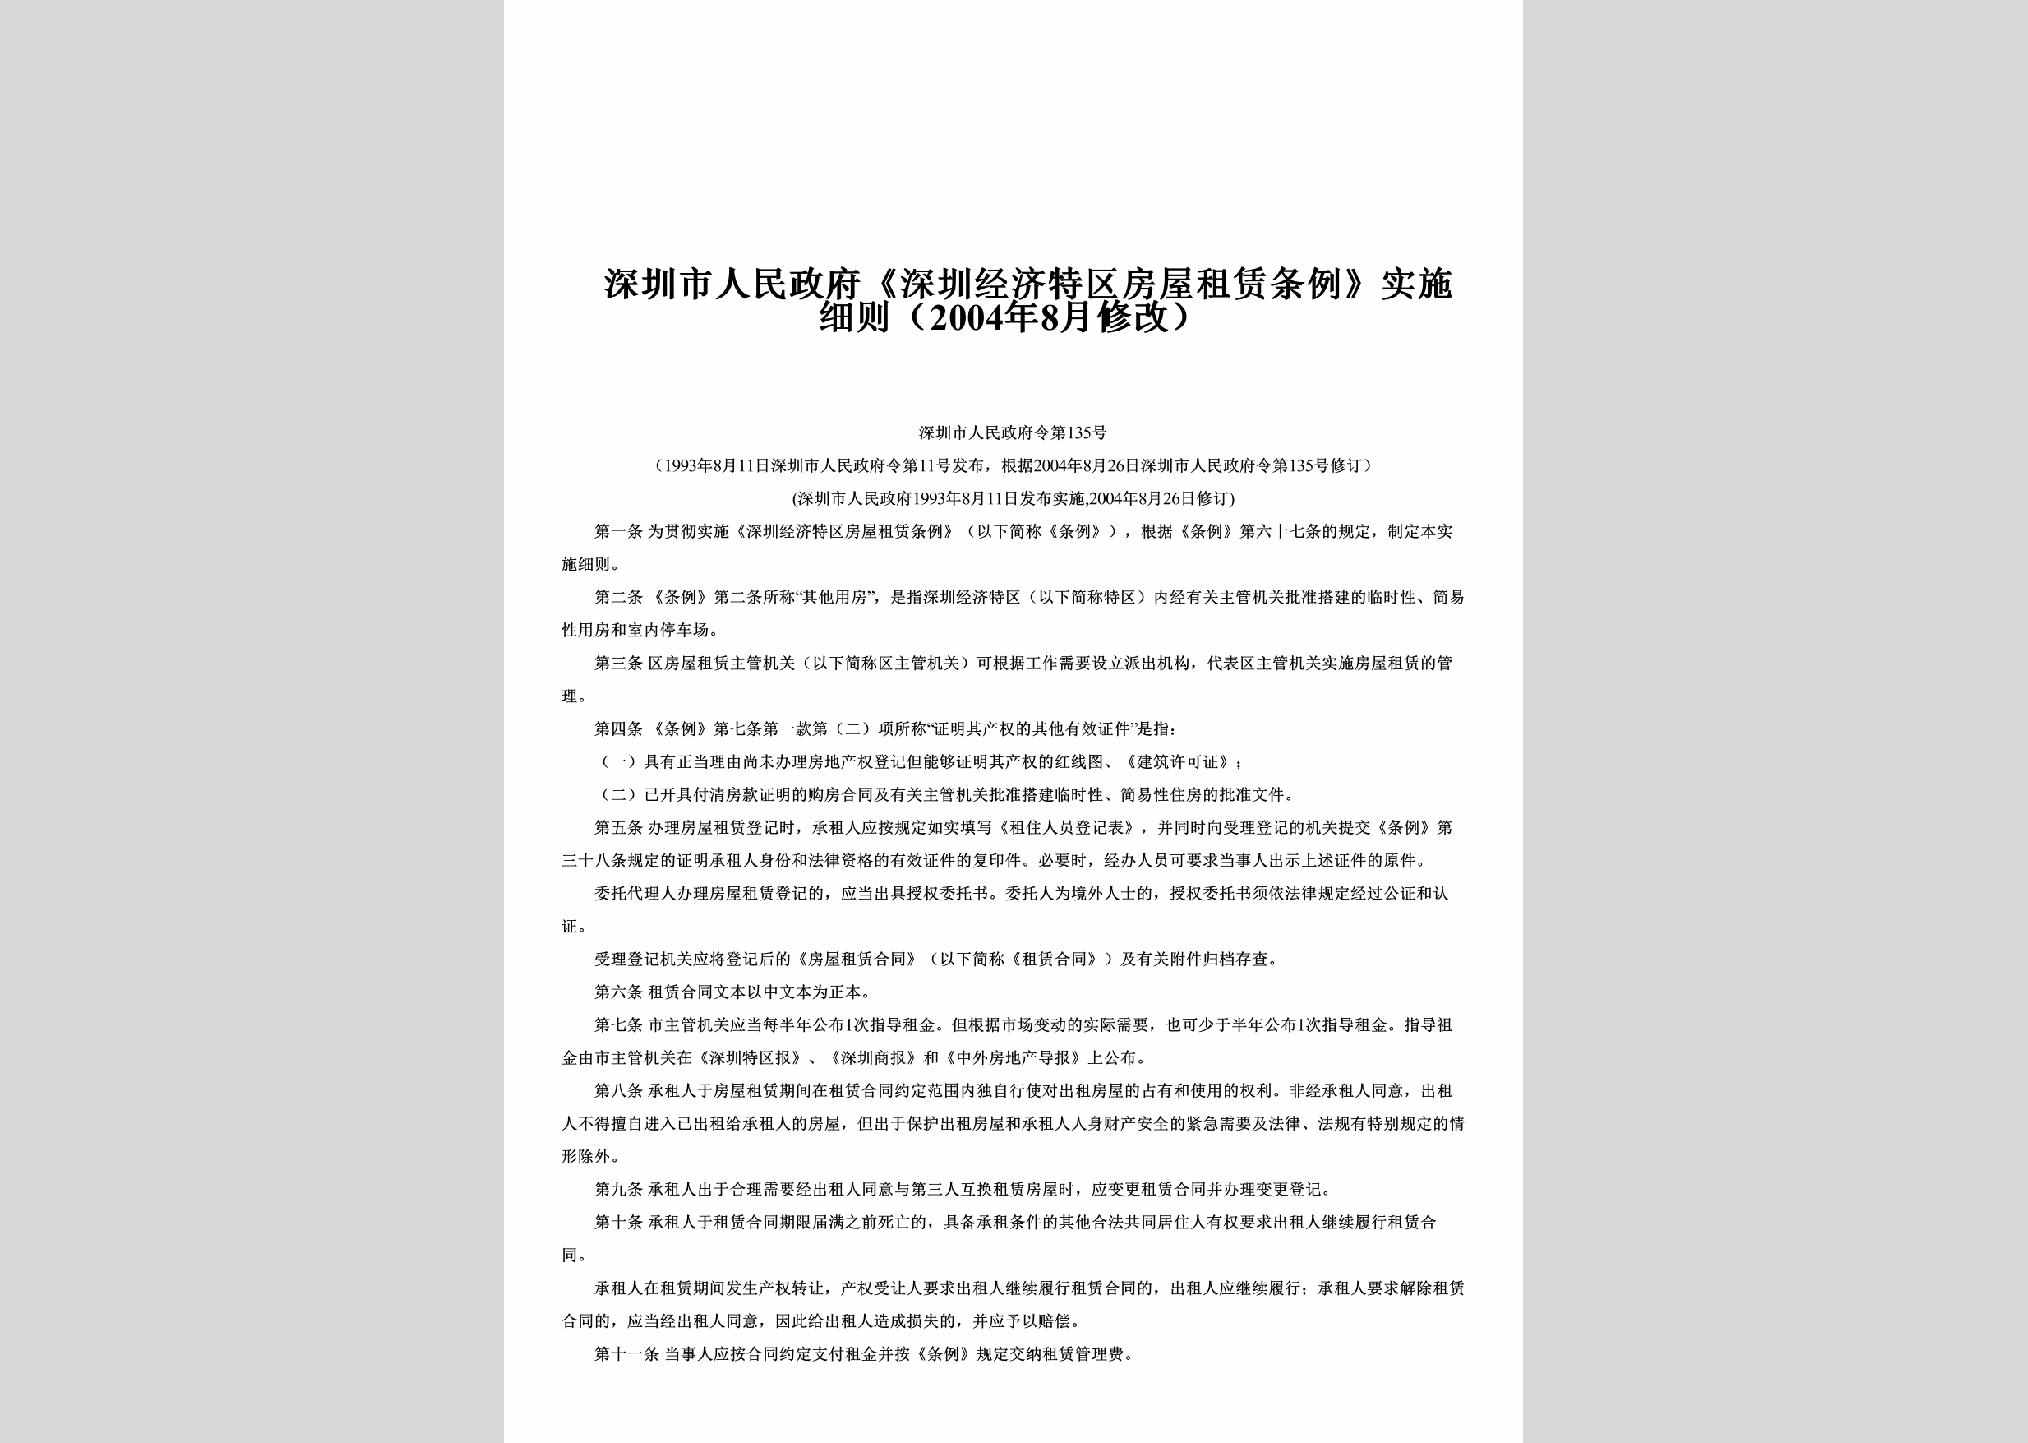 ZFL-2004-135：《深圳经济特区房屋租赁条例》实施细则（2004年8月修改）